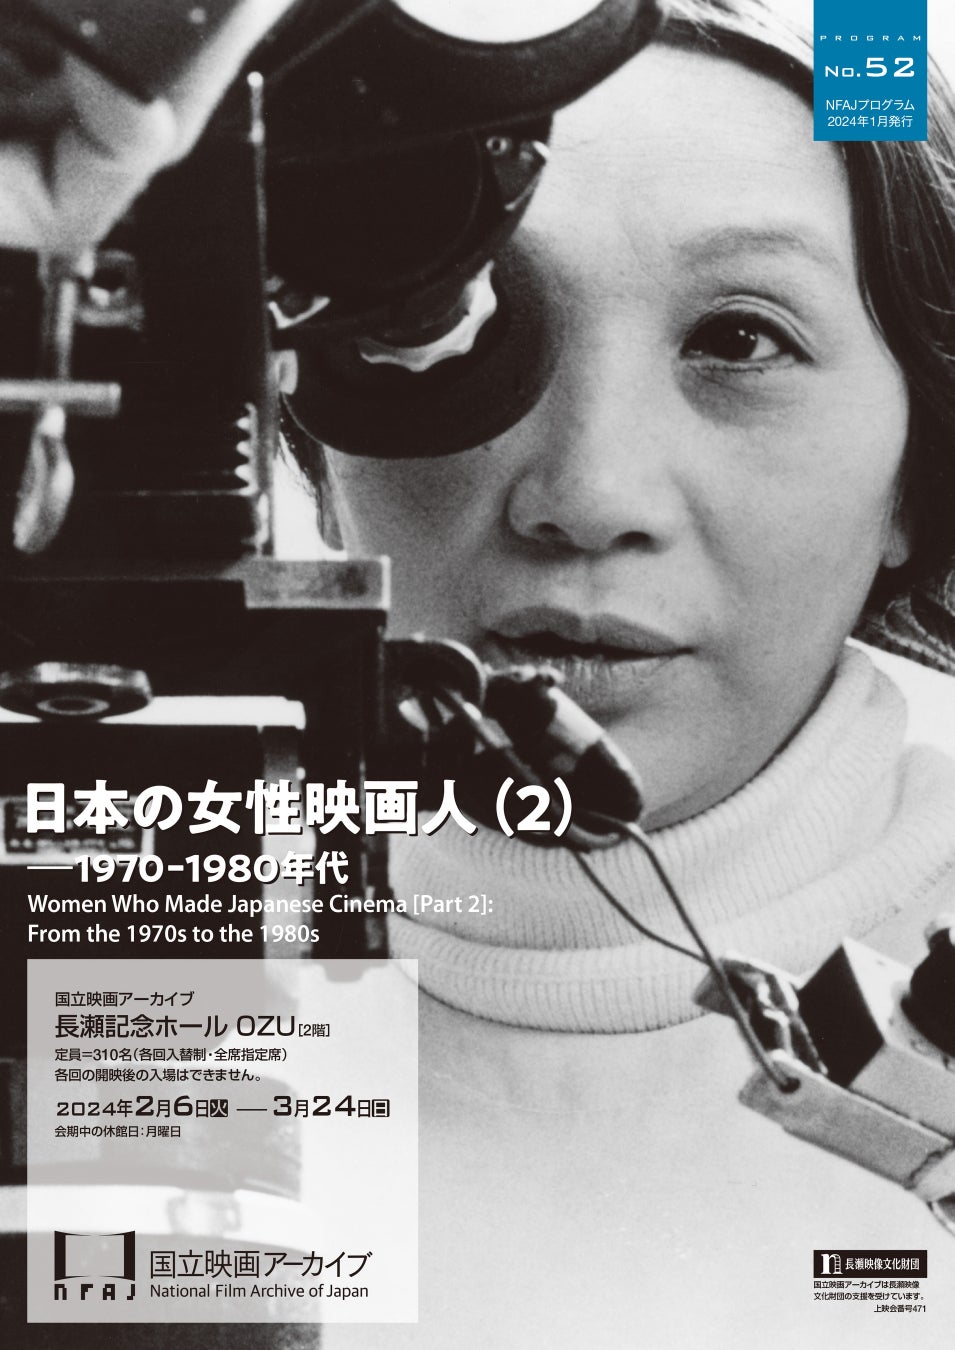 【国立映画アーカイブ】上映企画「日本の女性映画人（2）――1970-1980年代」開催のお知らせ